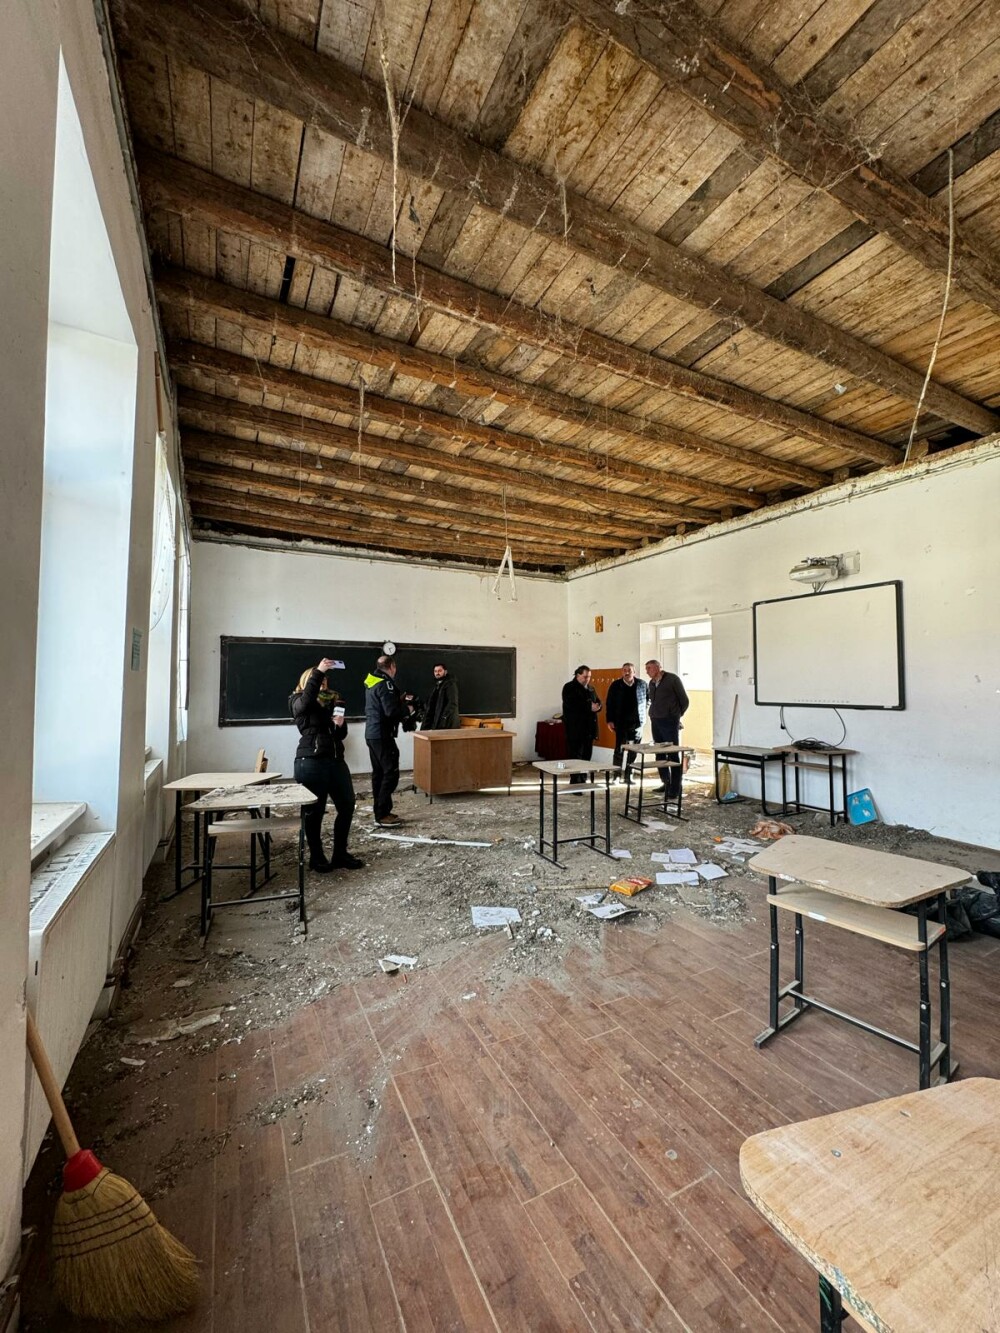 Tavanul unei săli de clasă din Sibiu s-a prăbuşit. Patru elevi au fost răniţi | FOTO & VIDEO - Imaginea 1